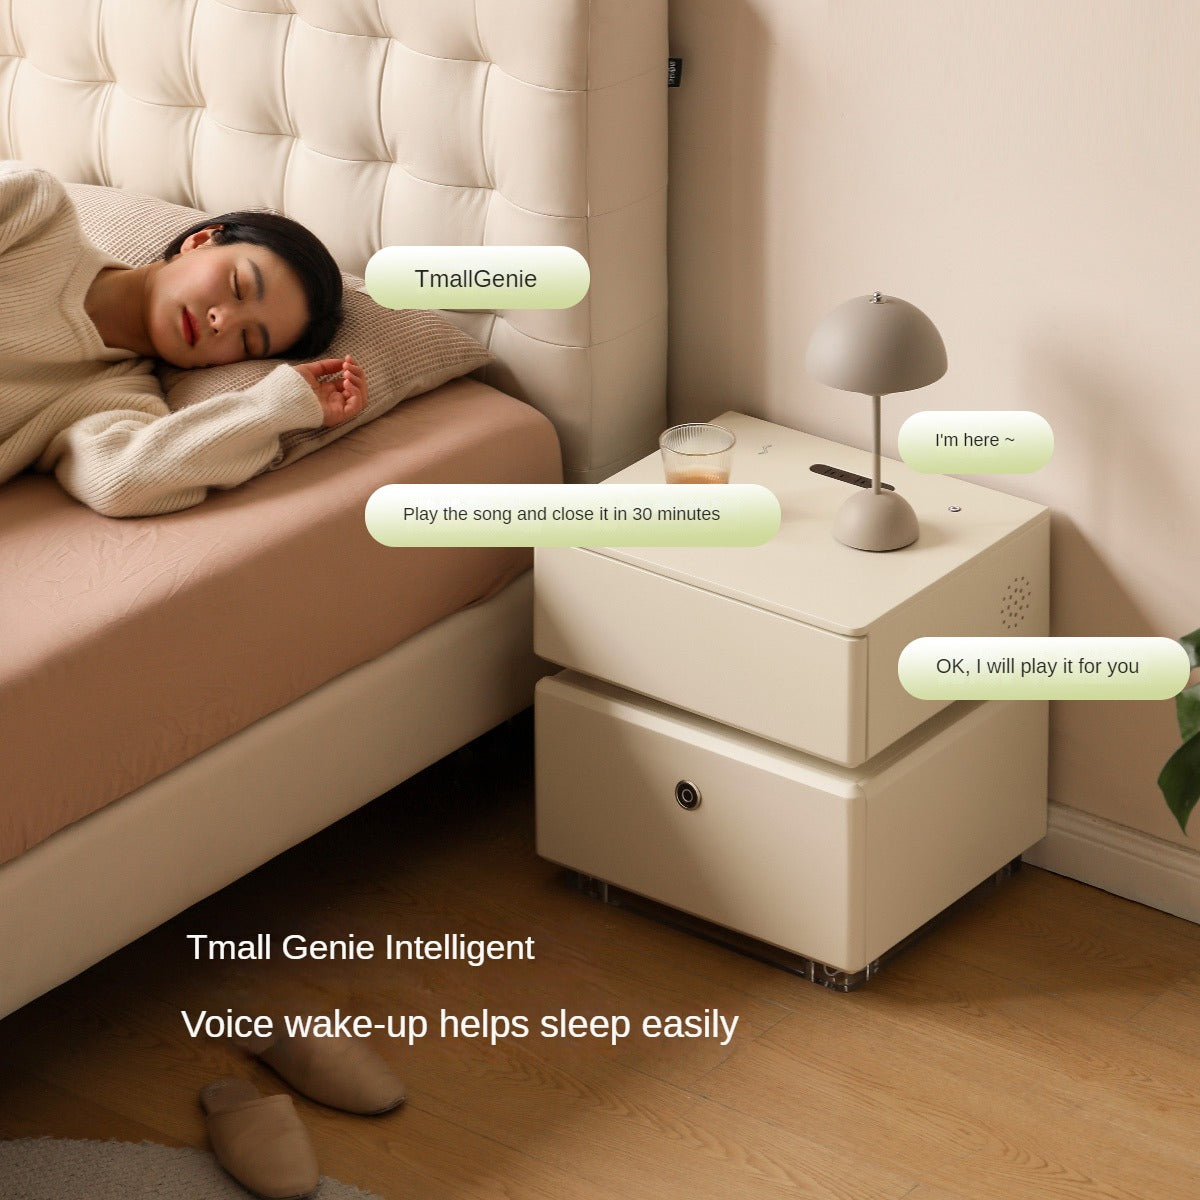 Oak, Poplar solid wood Smart nightstand Wireless Charging, Fingerprint Lock Storage Cabinet"